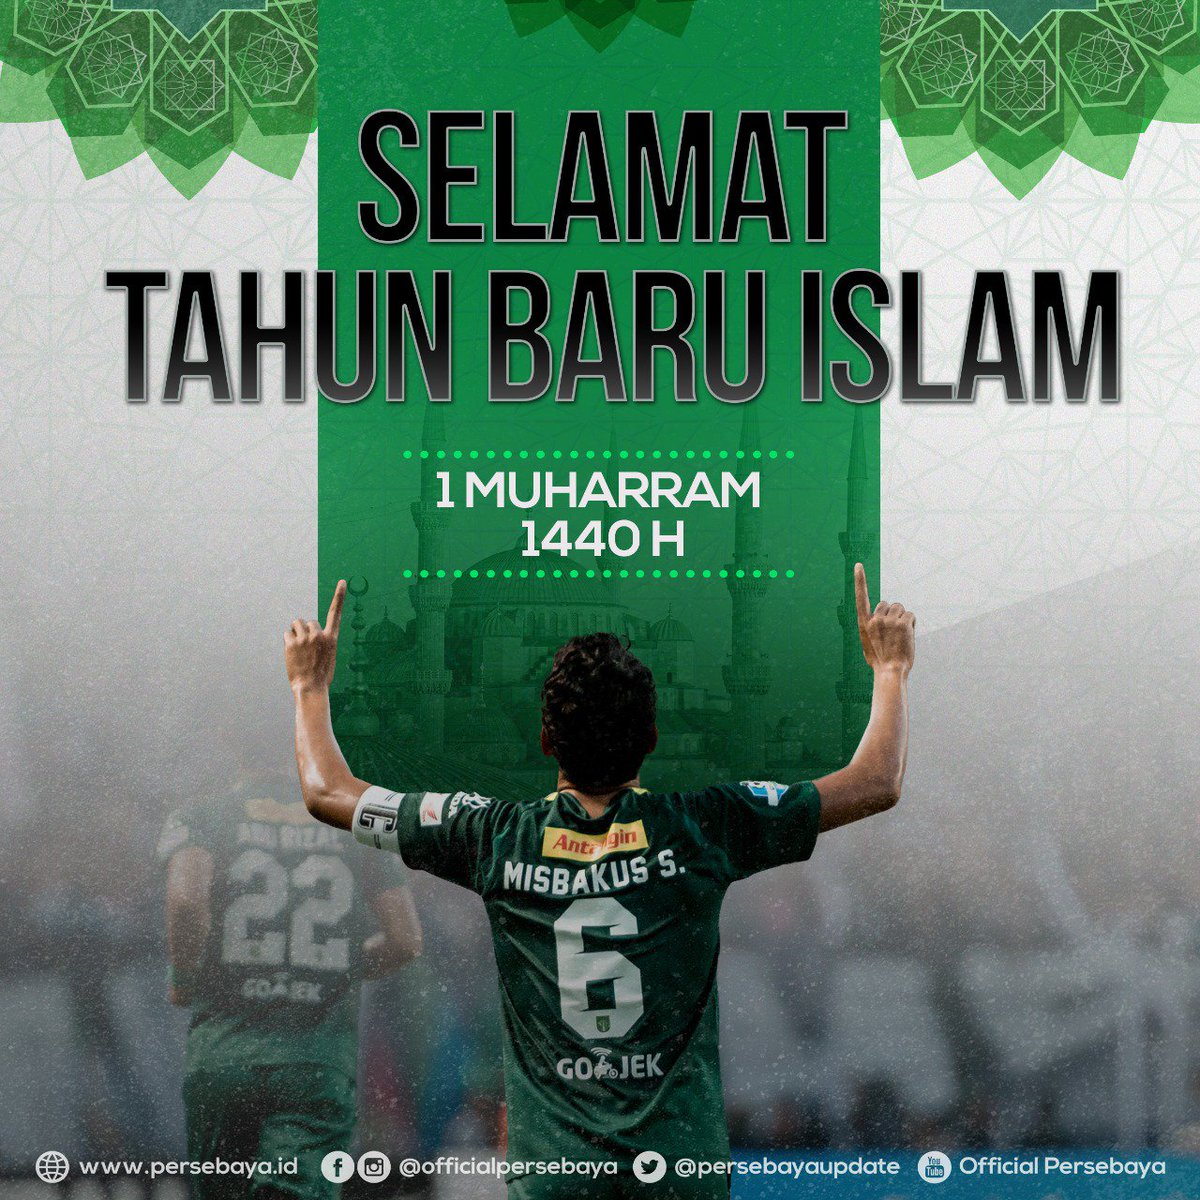 Official Persebaya On Twitter Selamat Tahun Baru Islam 1 Muharram